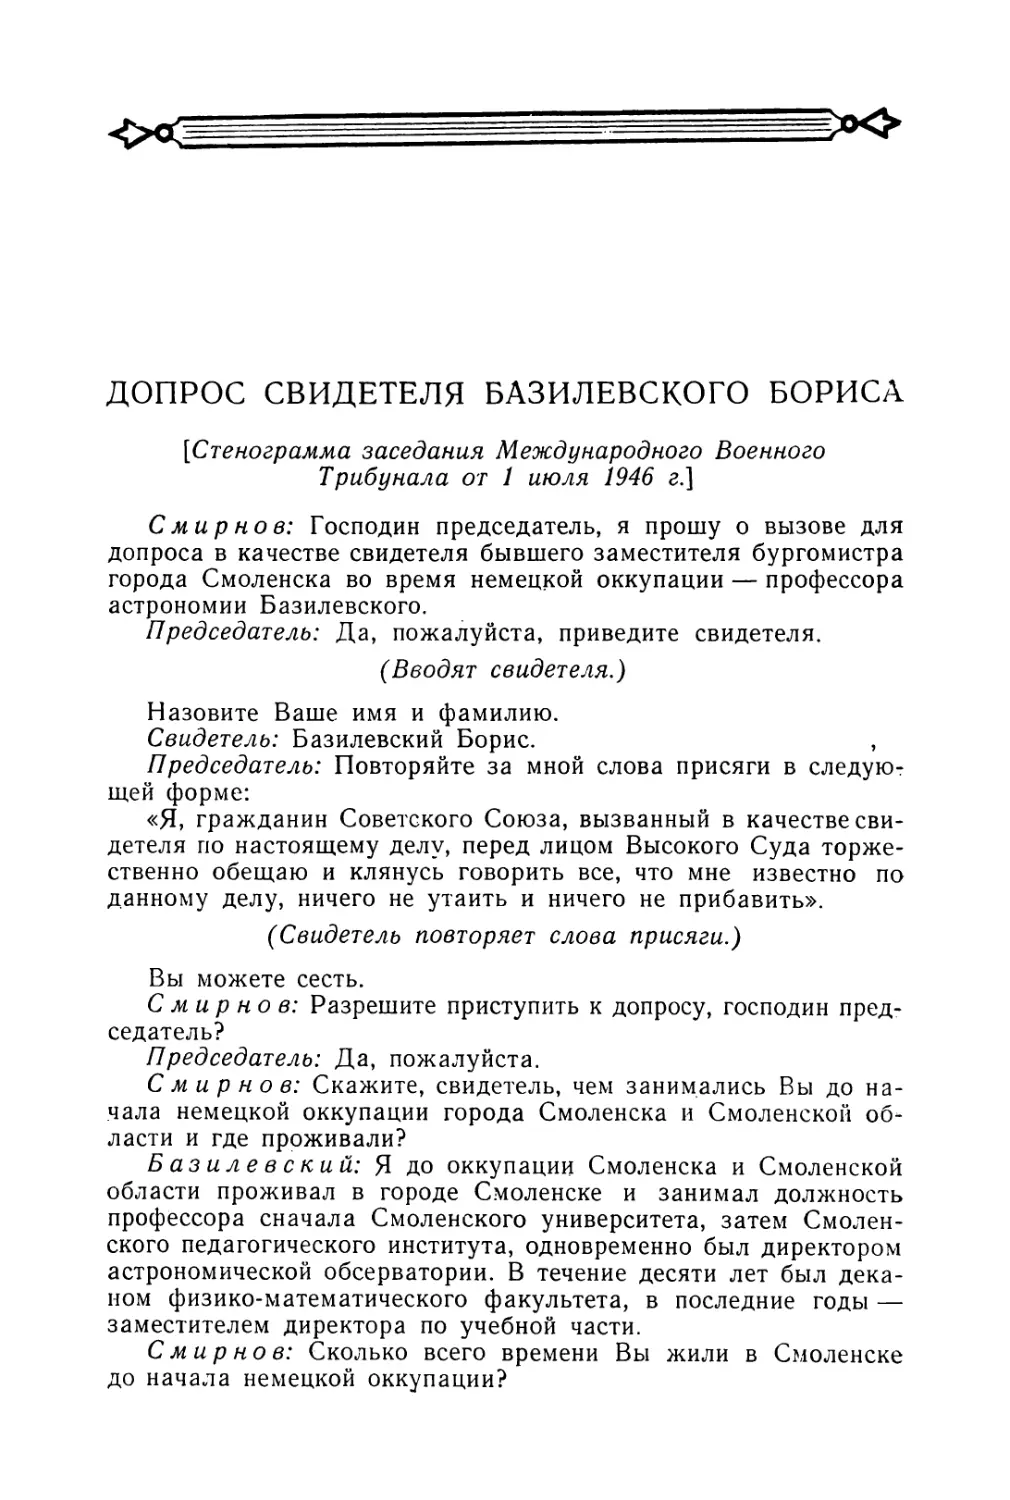 Допрос свидетеля Базилевского Бориса в заседании Трибунала 1 июля 1946 г.